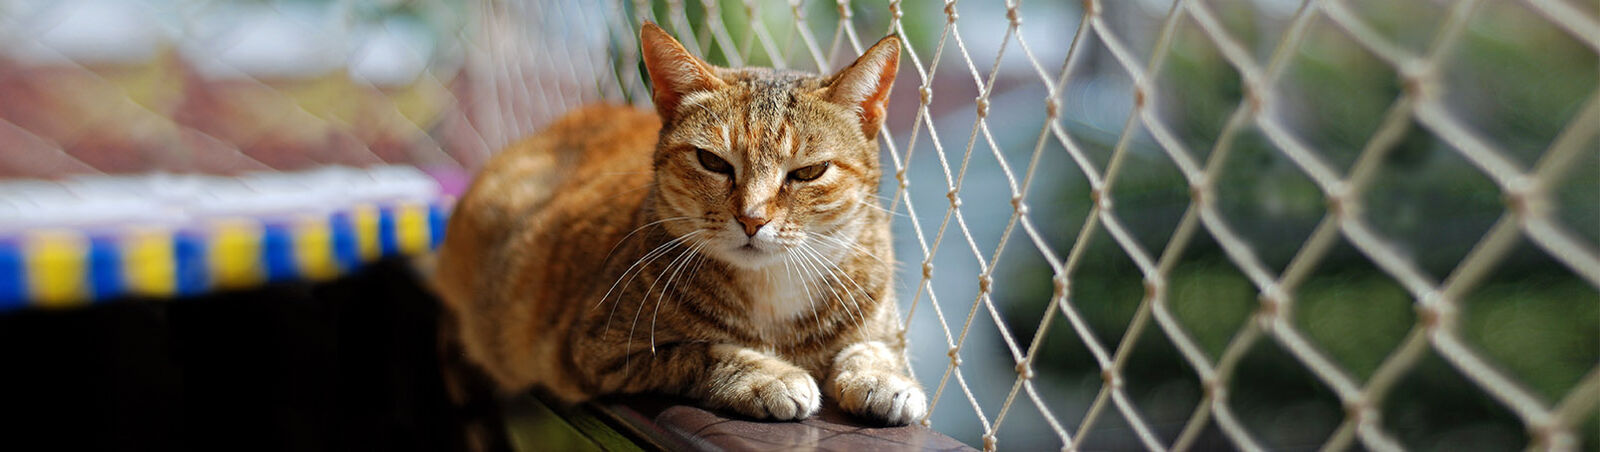 Katze liegt auf mit Netz gesichertem Balkongeländer.